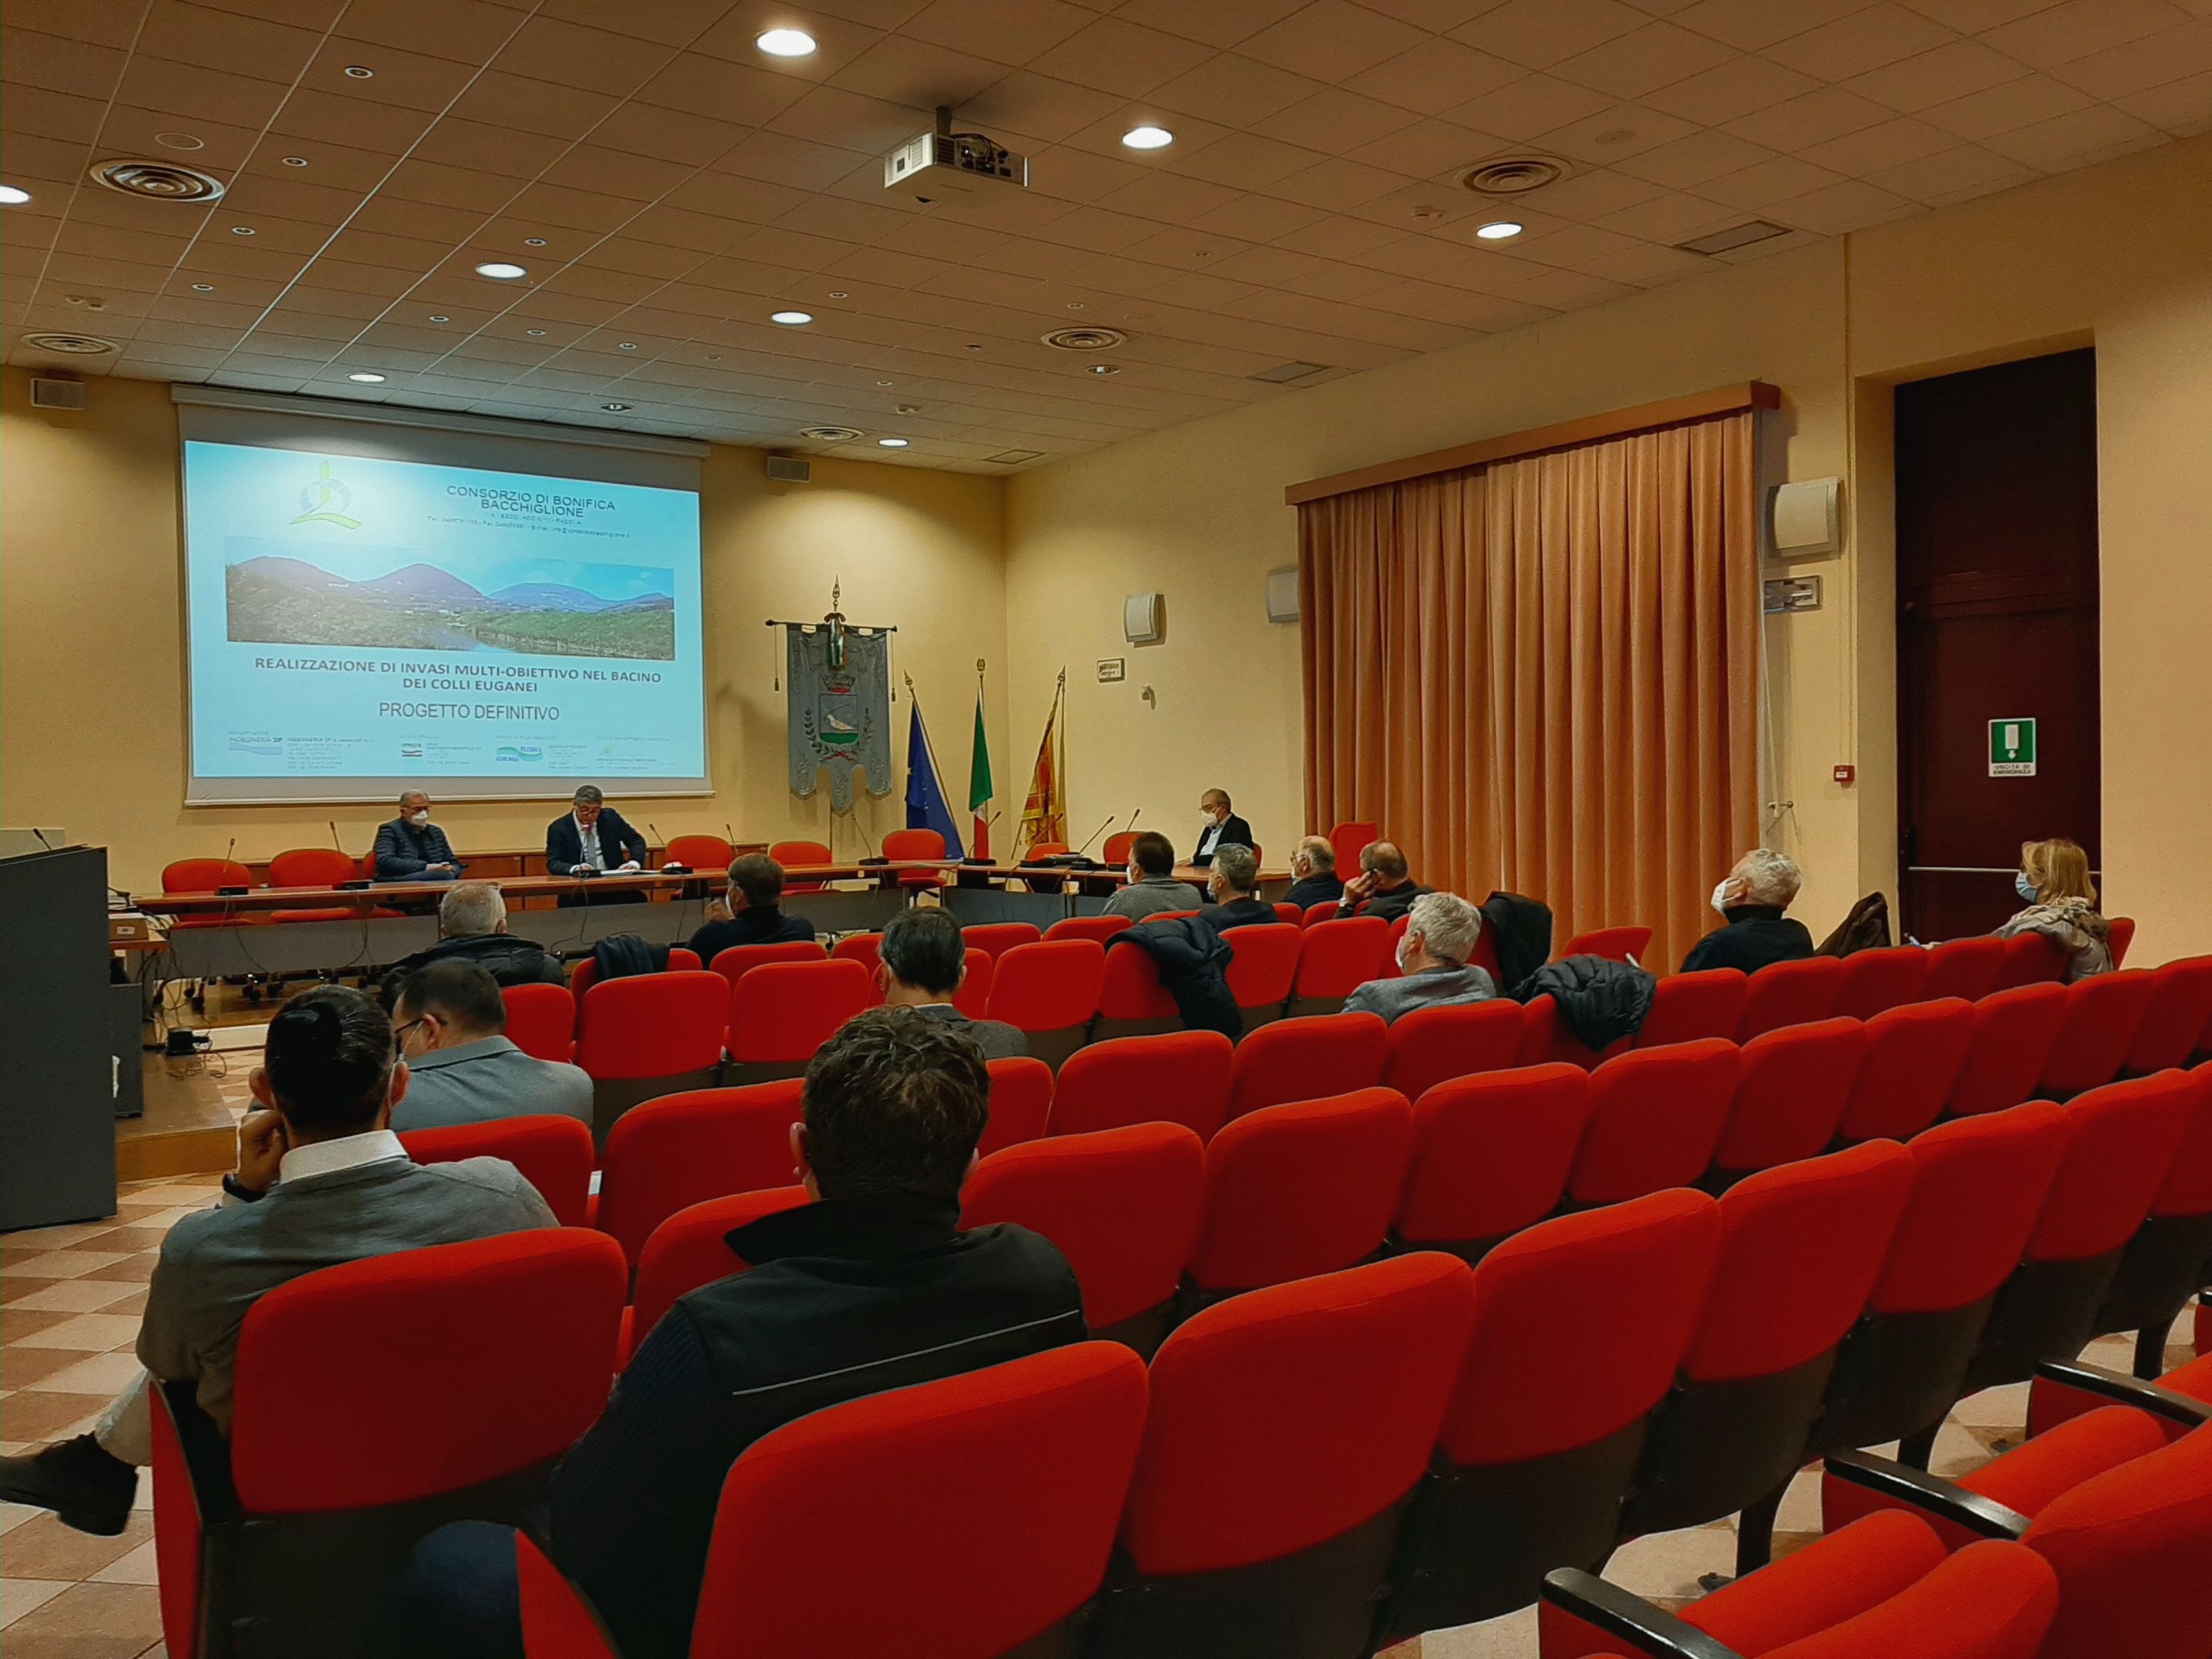 Presentato al pubblico il progetto per la realizzazione di invasi multi – obiettivo nel bacino Colli Euganei